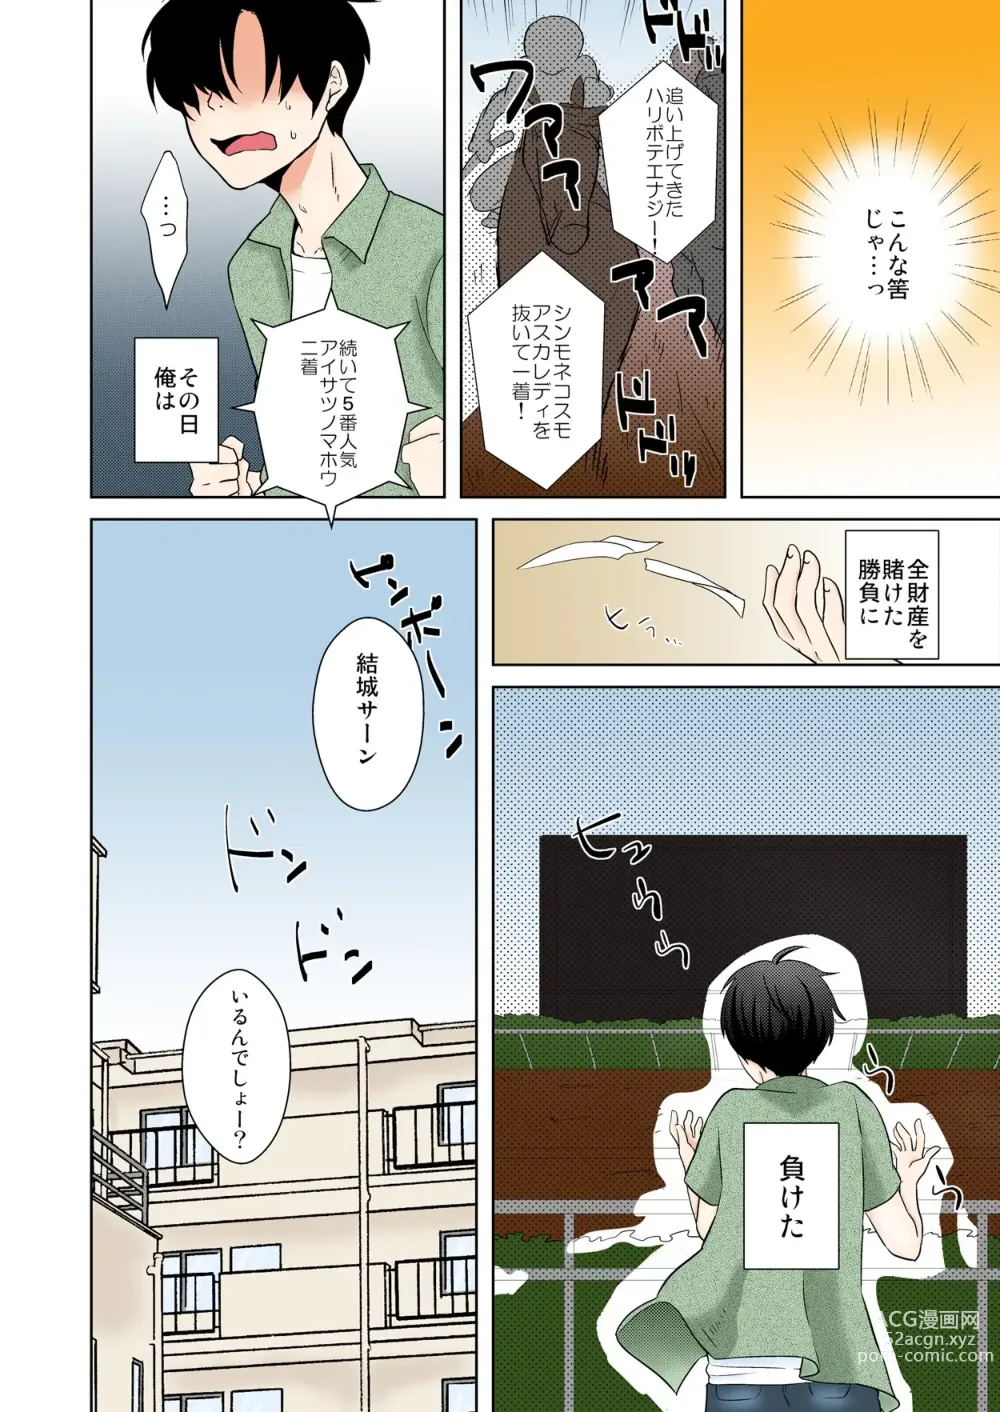 Page 4 of manga AV Nai GAME Zettai ni ￮￮ Shite wa Ikemasen!